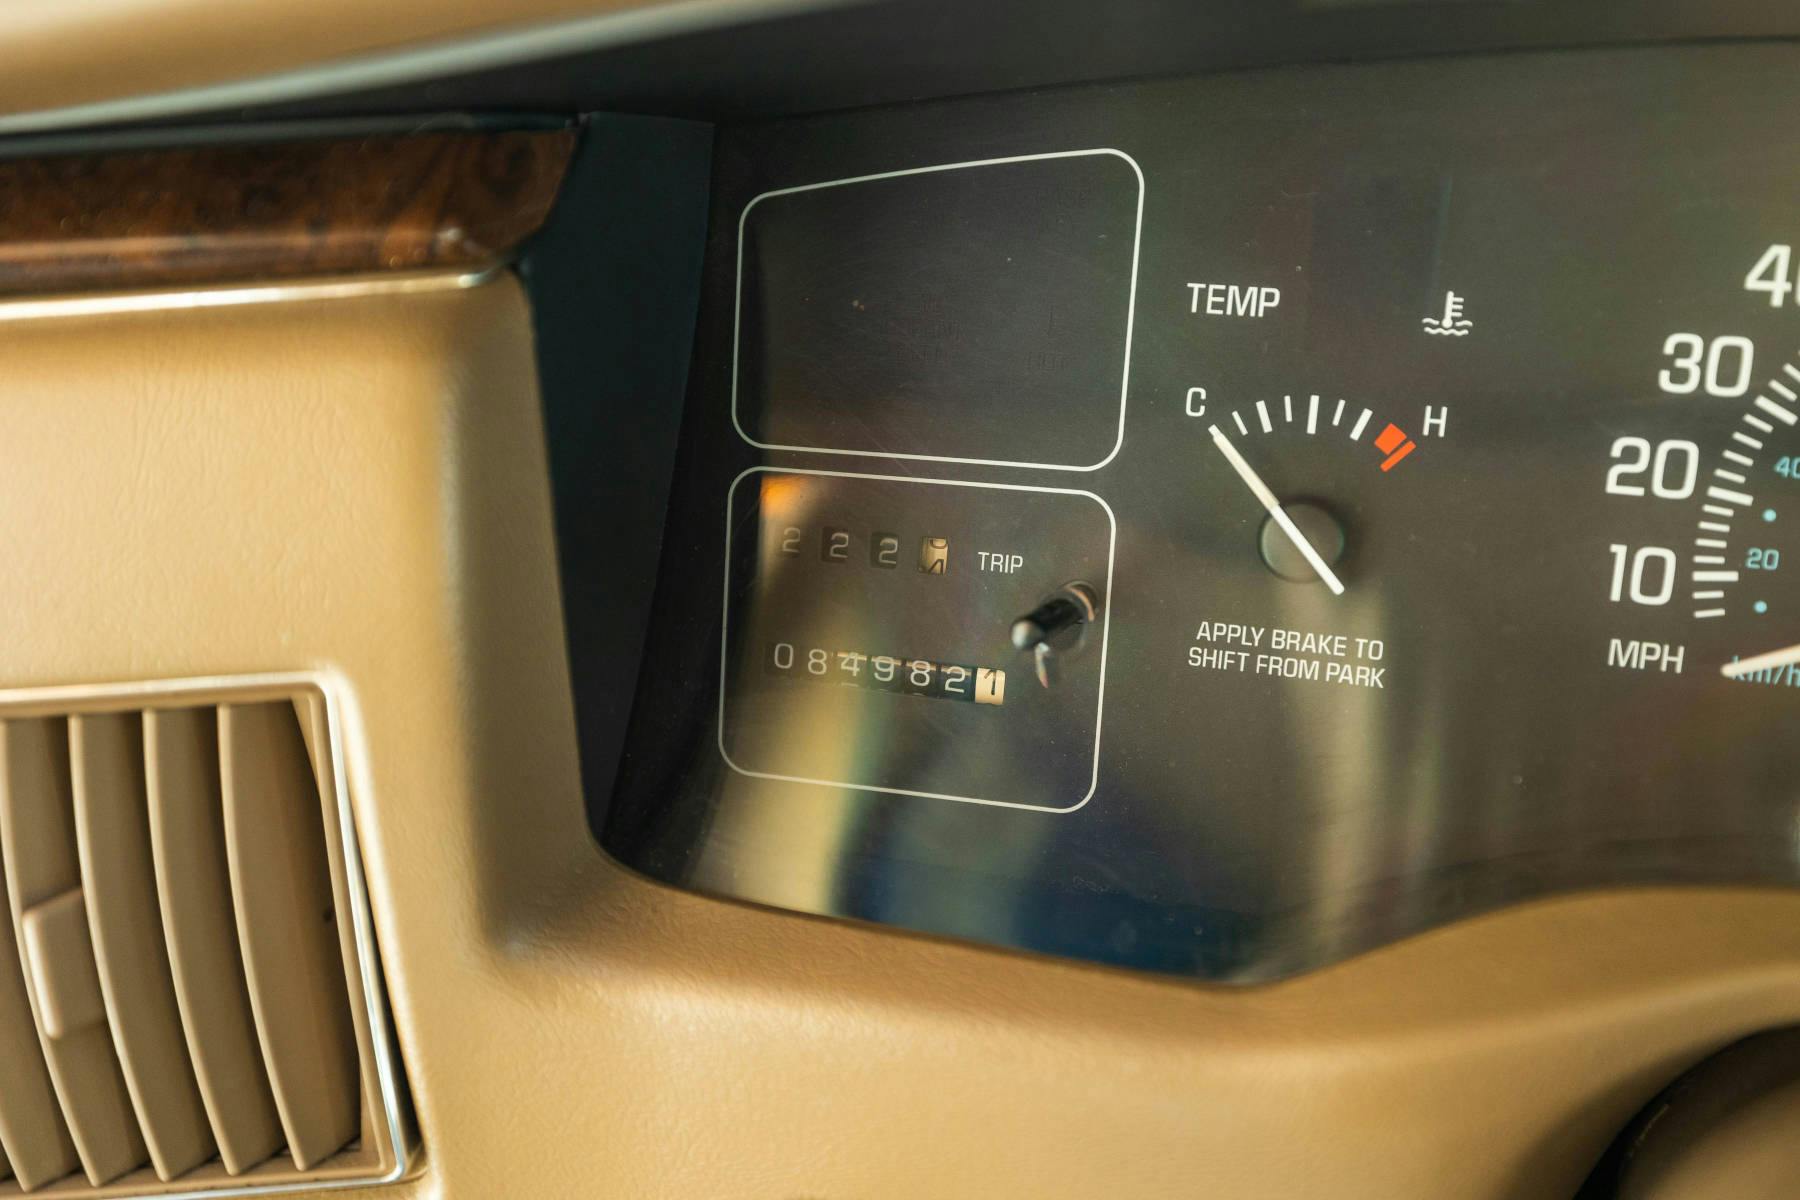 1996 Buick Roadmaster Estate Wagon interior odometer